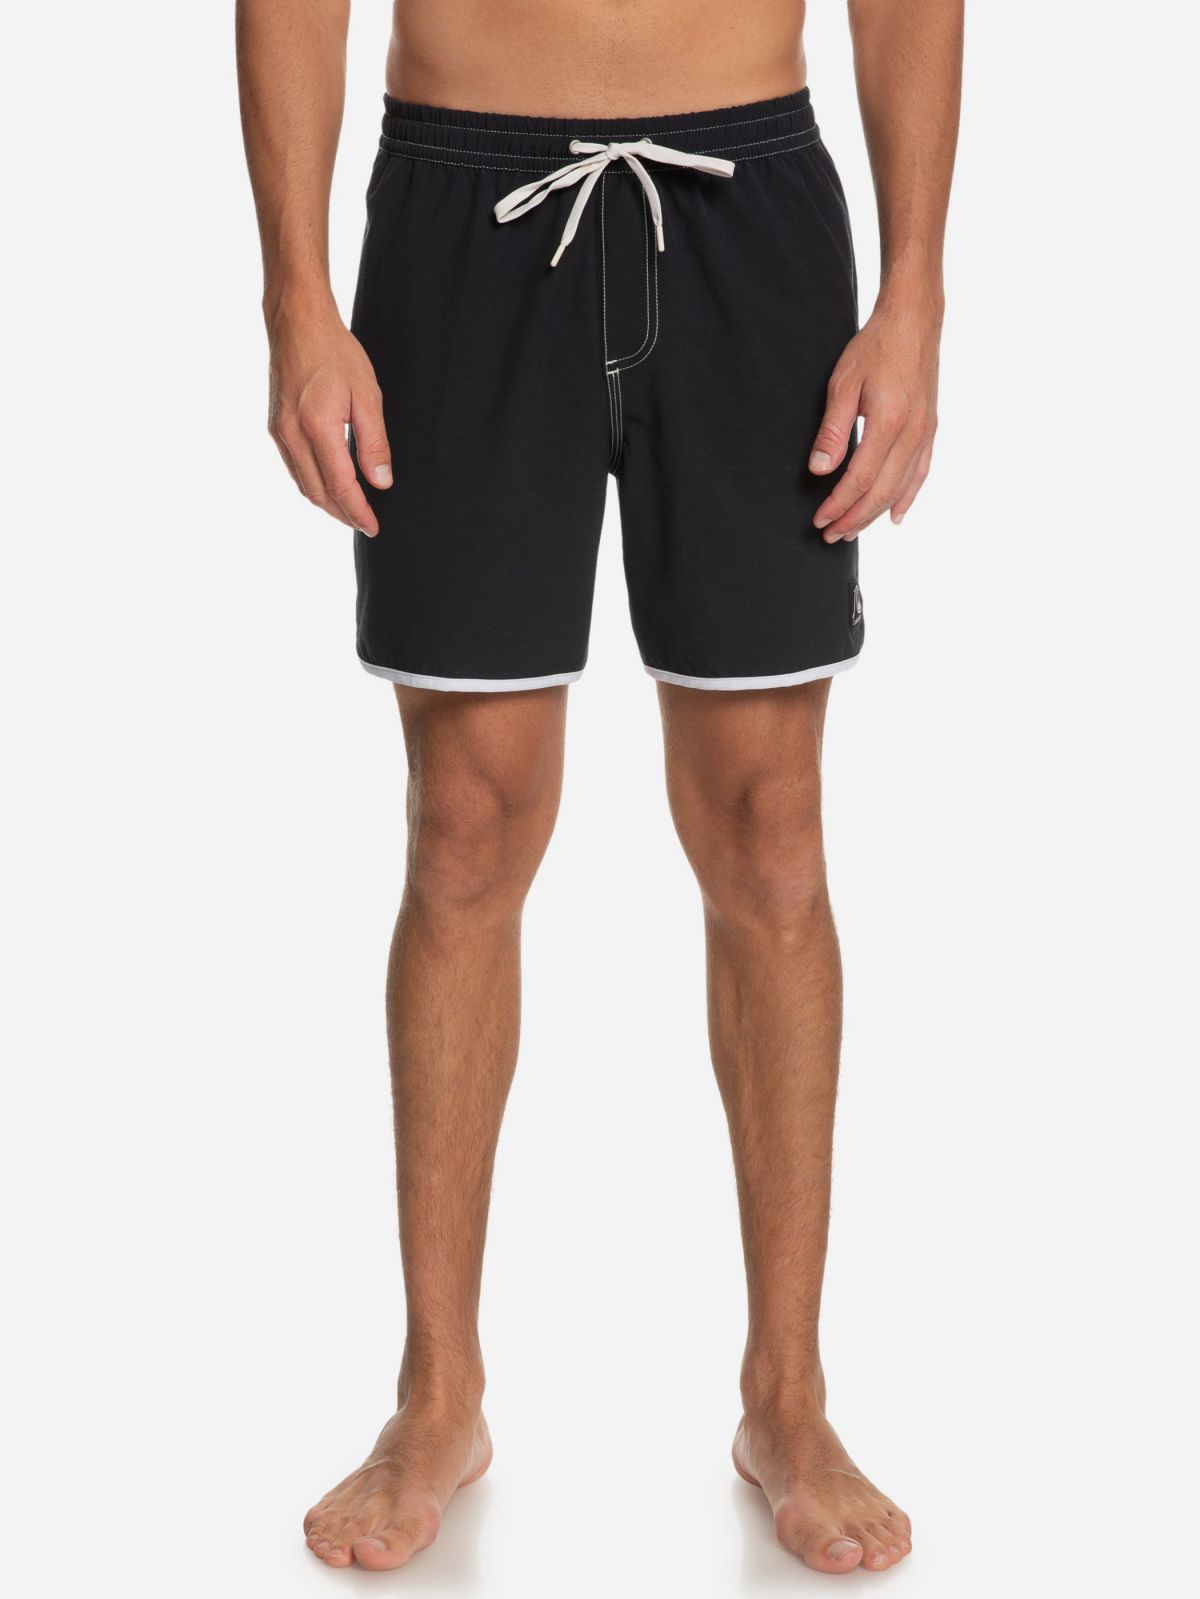  מכנסי בגד ים עם תווית לוגו של QUIKSILVER